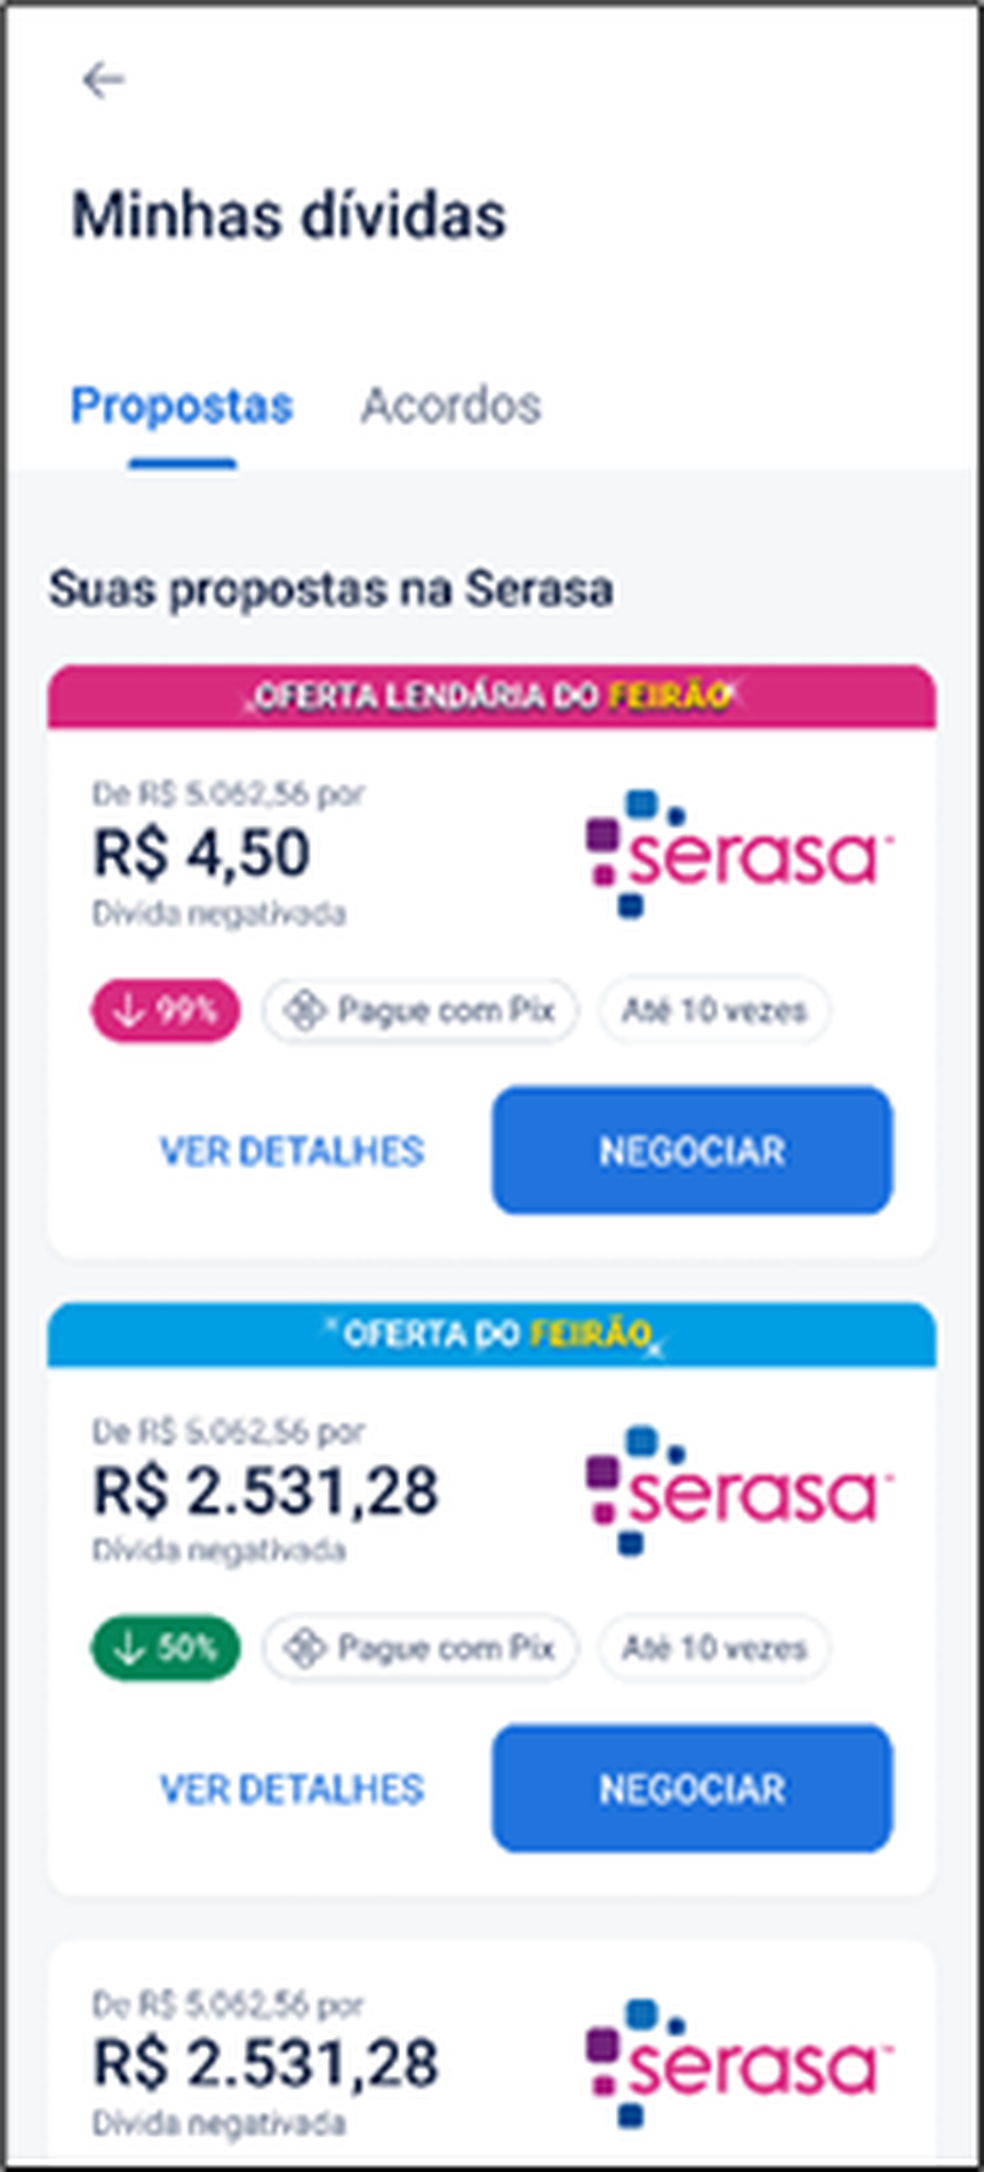 Projeto do Serasa oferece serviço gratuito para negociação de